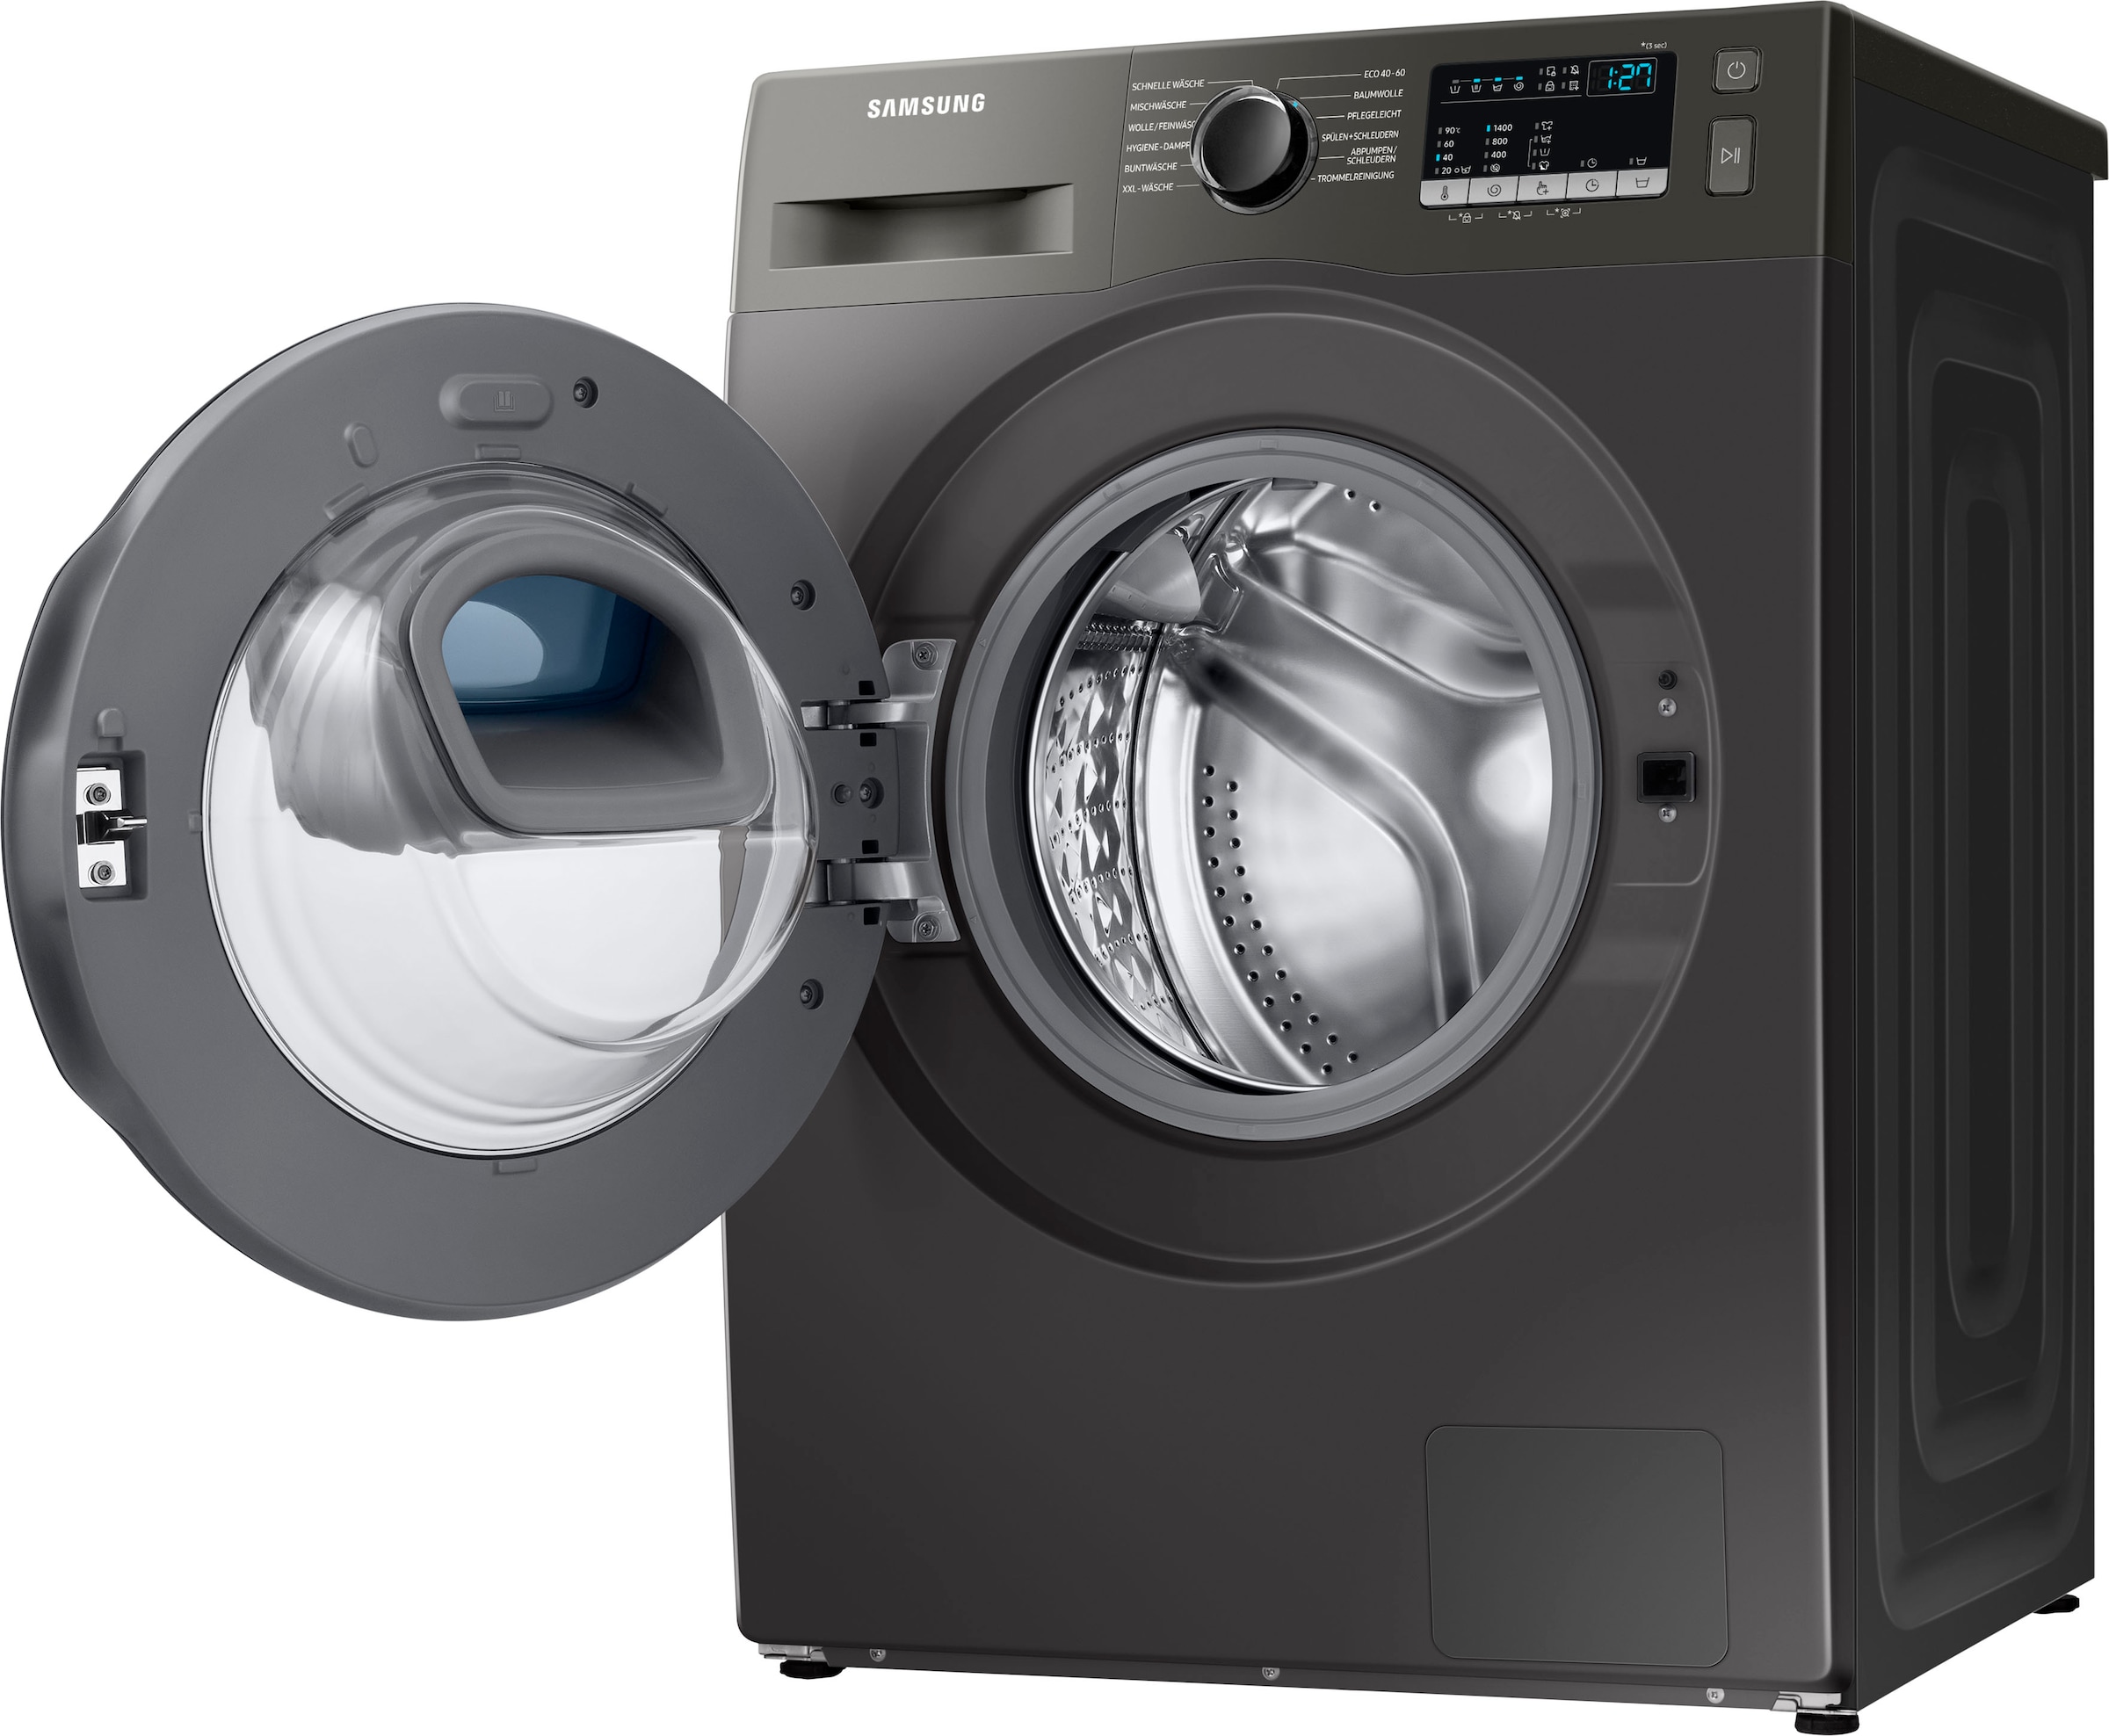 online /min, INOX, WW7ET4543AX, U 1400 7 WW4500T »WW7ET4543AX«, kg, Samsung kaufen AddWash™ BAUR Waschmaschine |